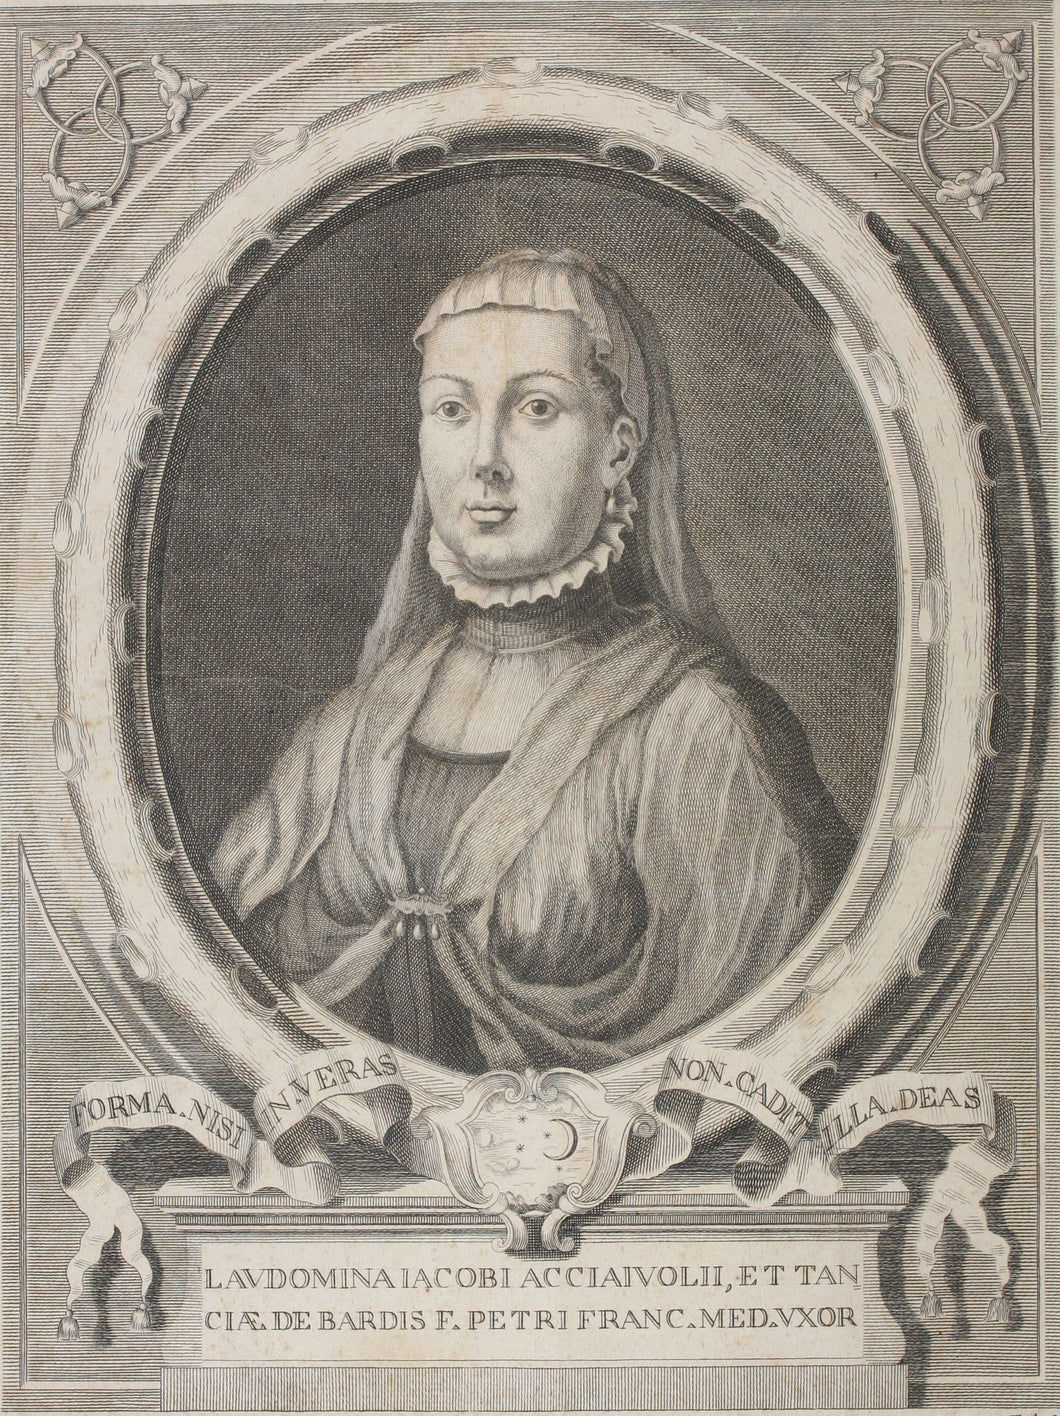 Giuseppe Zocchi, after. Portrait of: Laudomia Acciaiuoli. Engraving by Francesco Allegrini. 1750-1760 (circa).